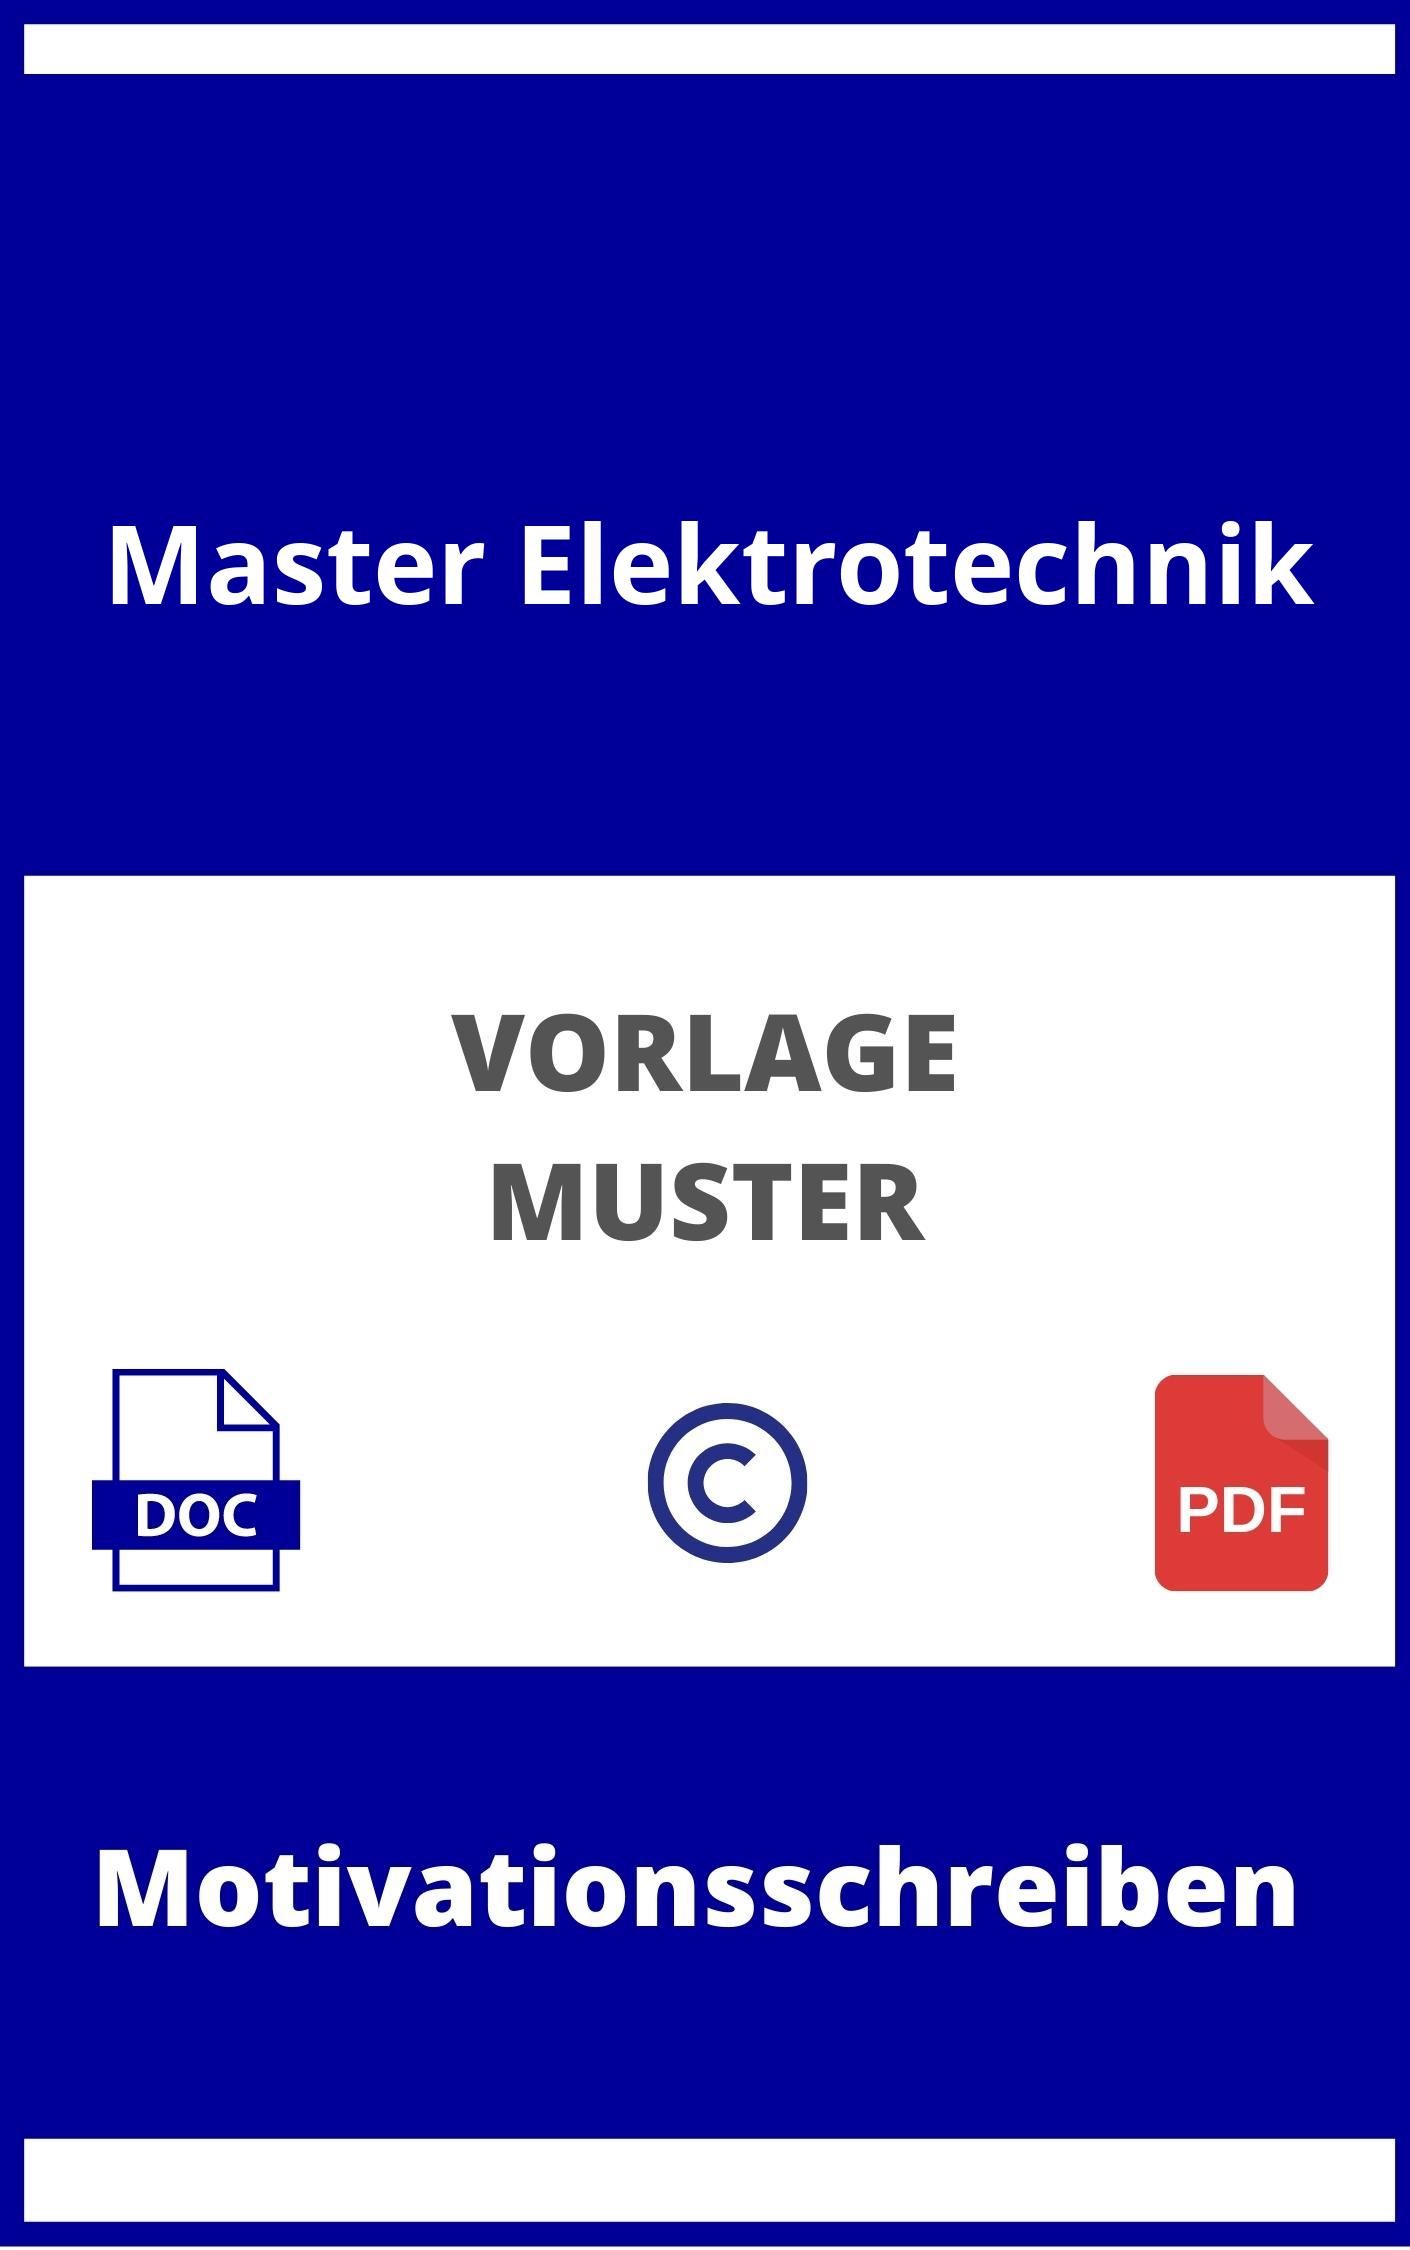 Motivationsschreiben Master Elektrotechnik